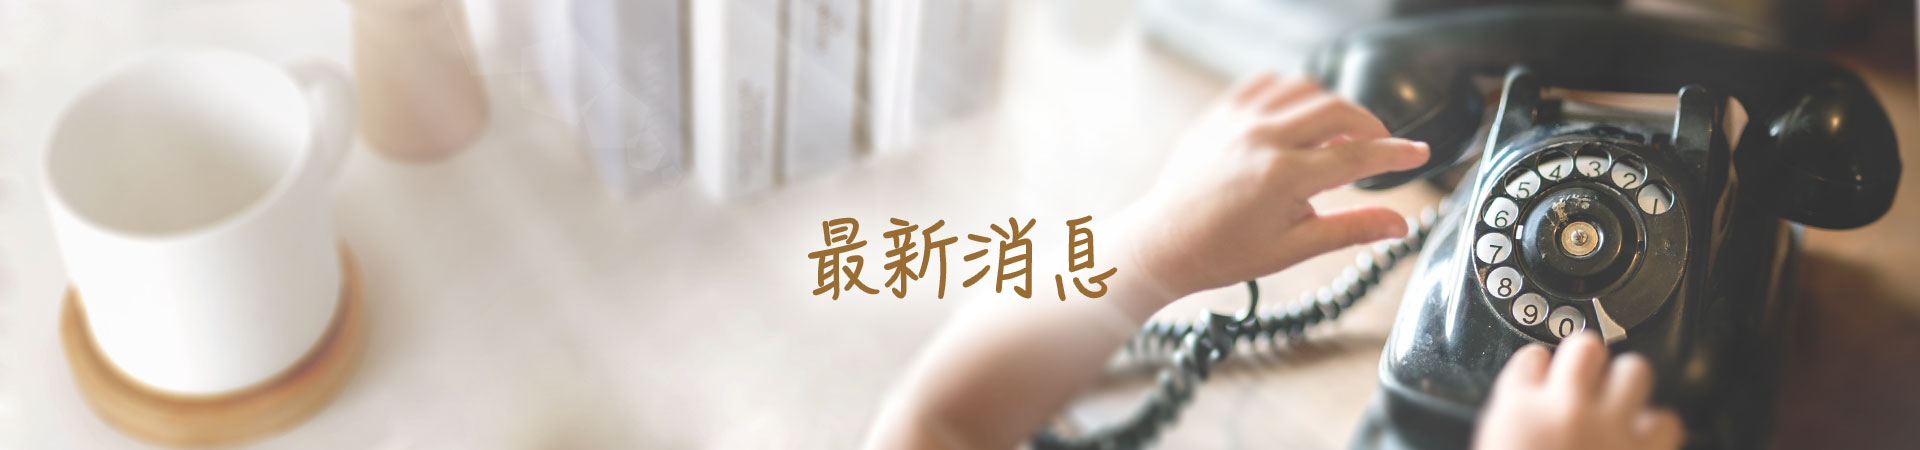 最新消息banner